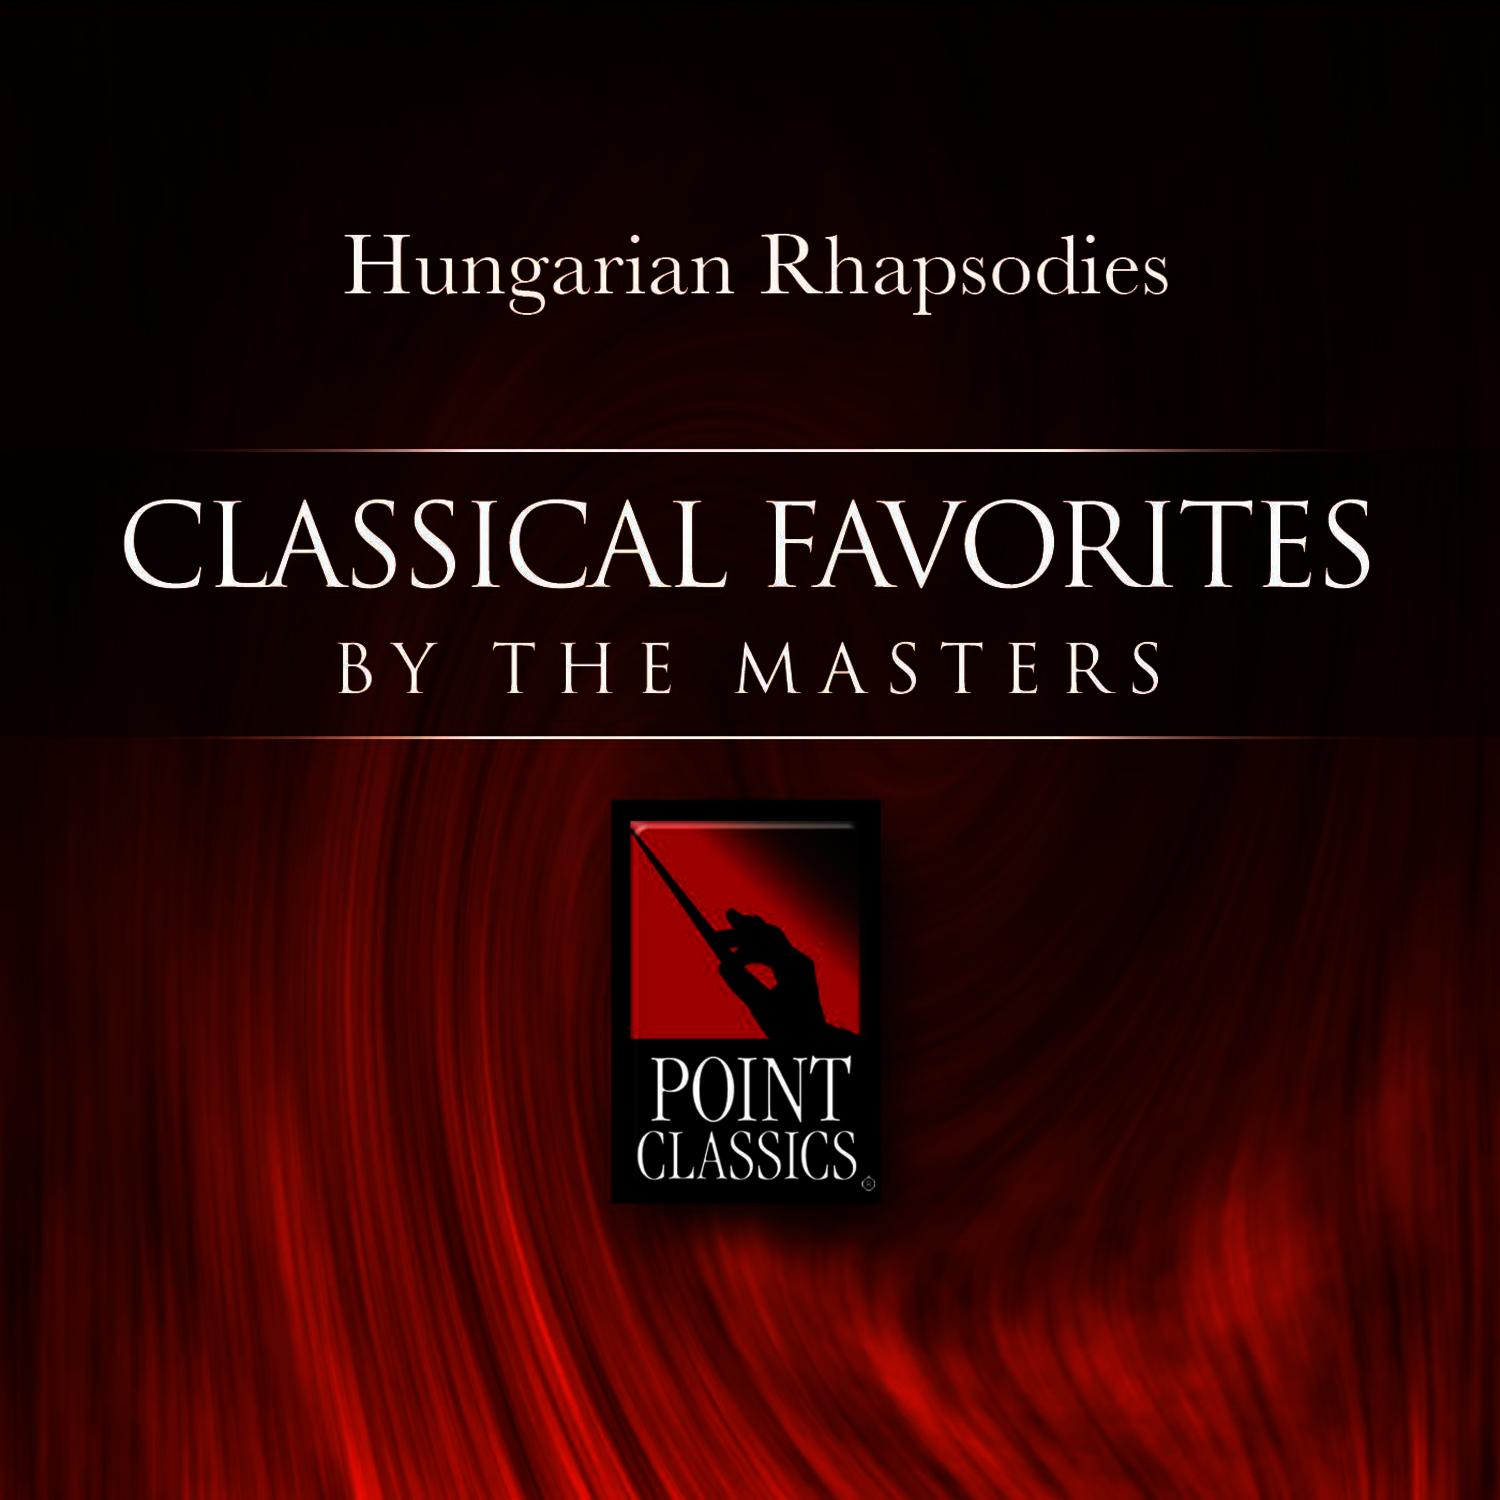 Hungarian Rhapsody No. 3 in B flat Major